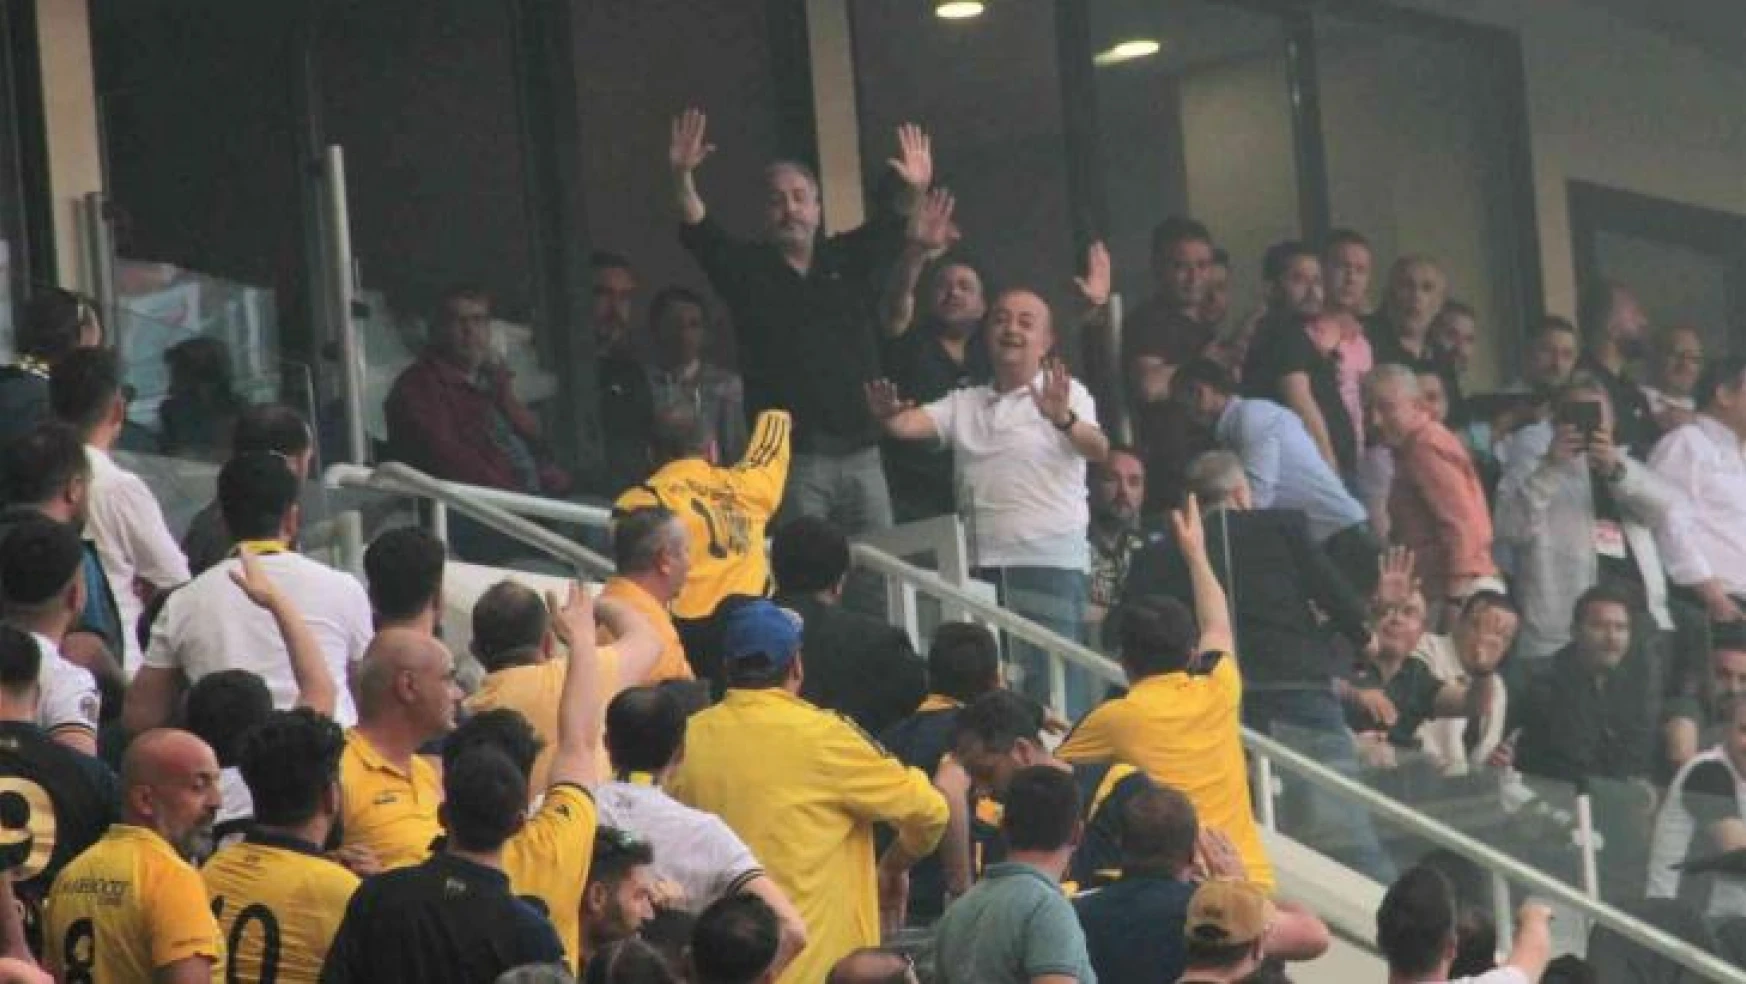 Ankaragücü - Boluspor maçında tribünler karıştı